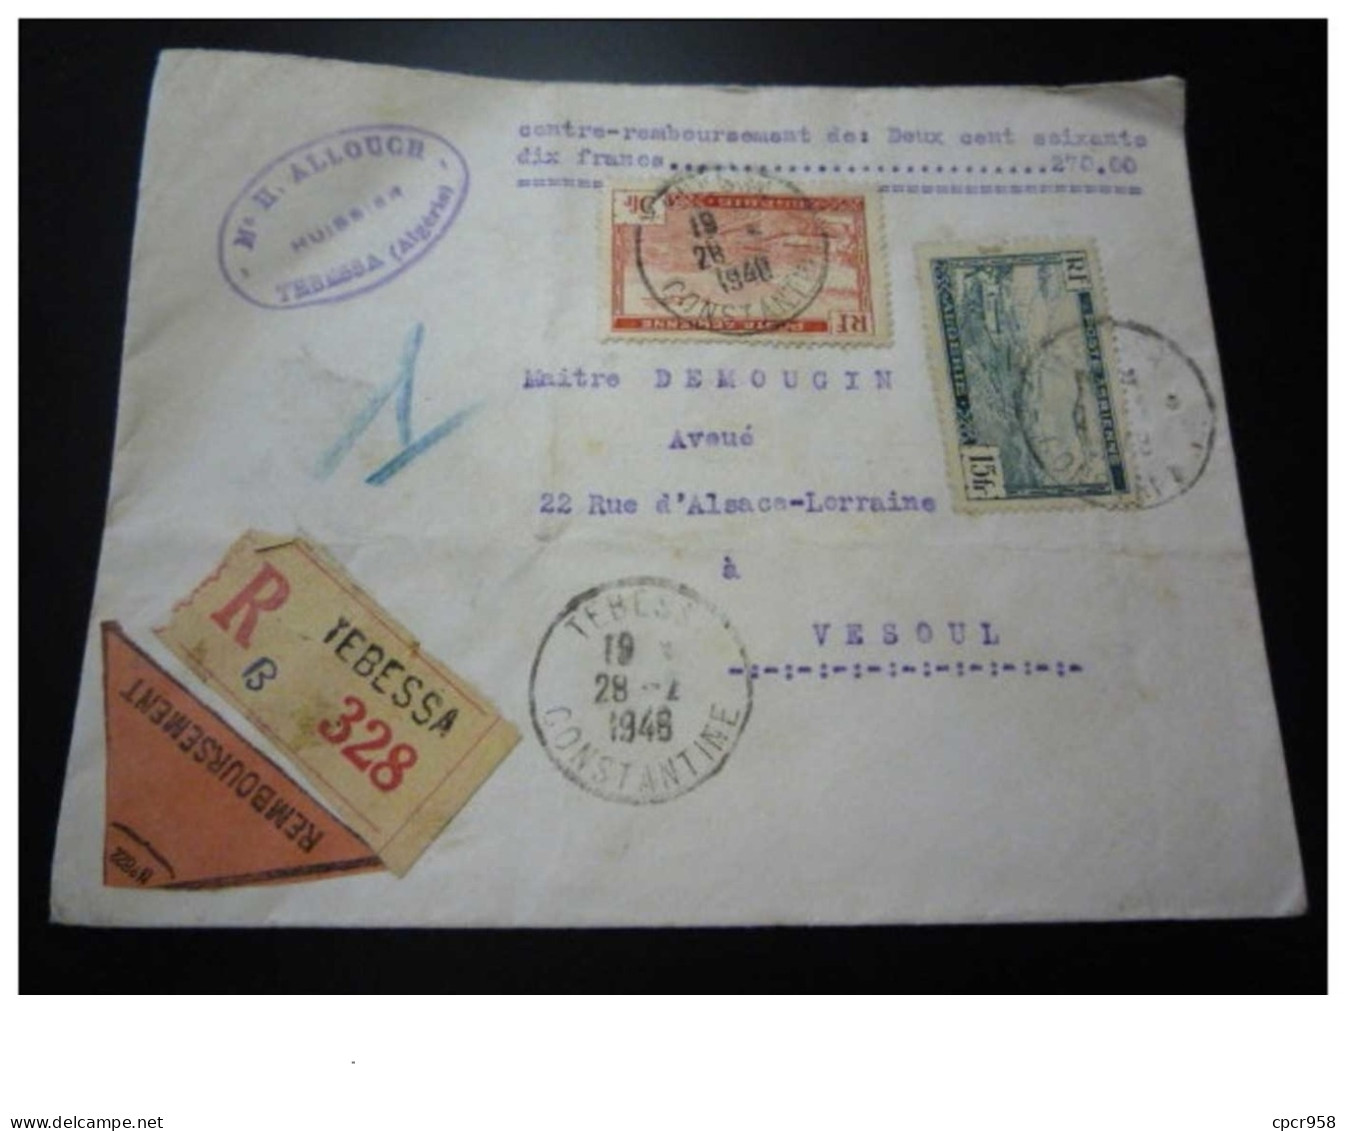 TIMBRE.n°29549.ALGERIE.CONTRE REMBOURSEMENT DE LA SOMME DE 270 FRANCS.1948.RECOMMANDE.POUR VESOUL - Covers & Documents